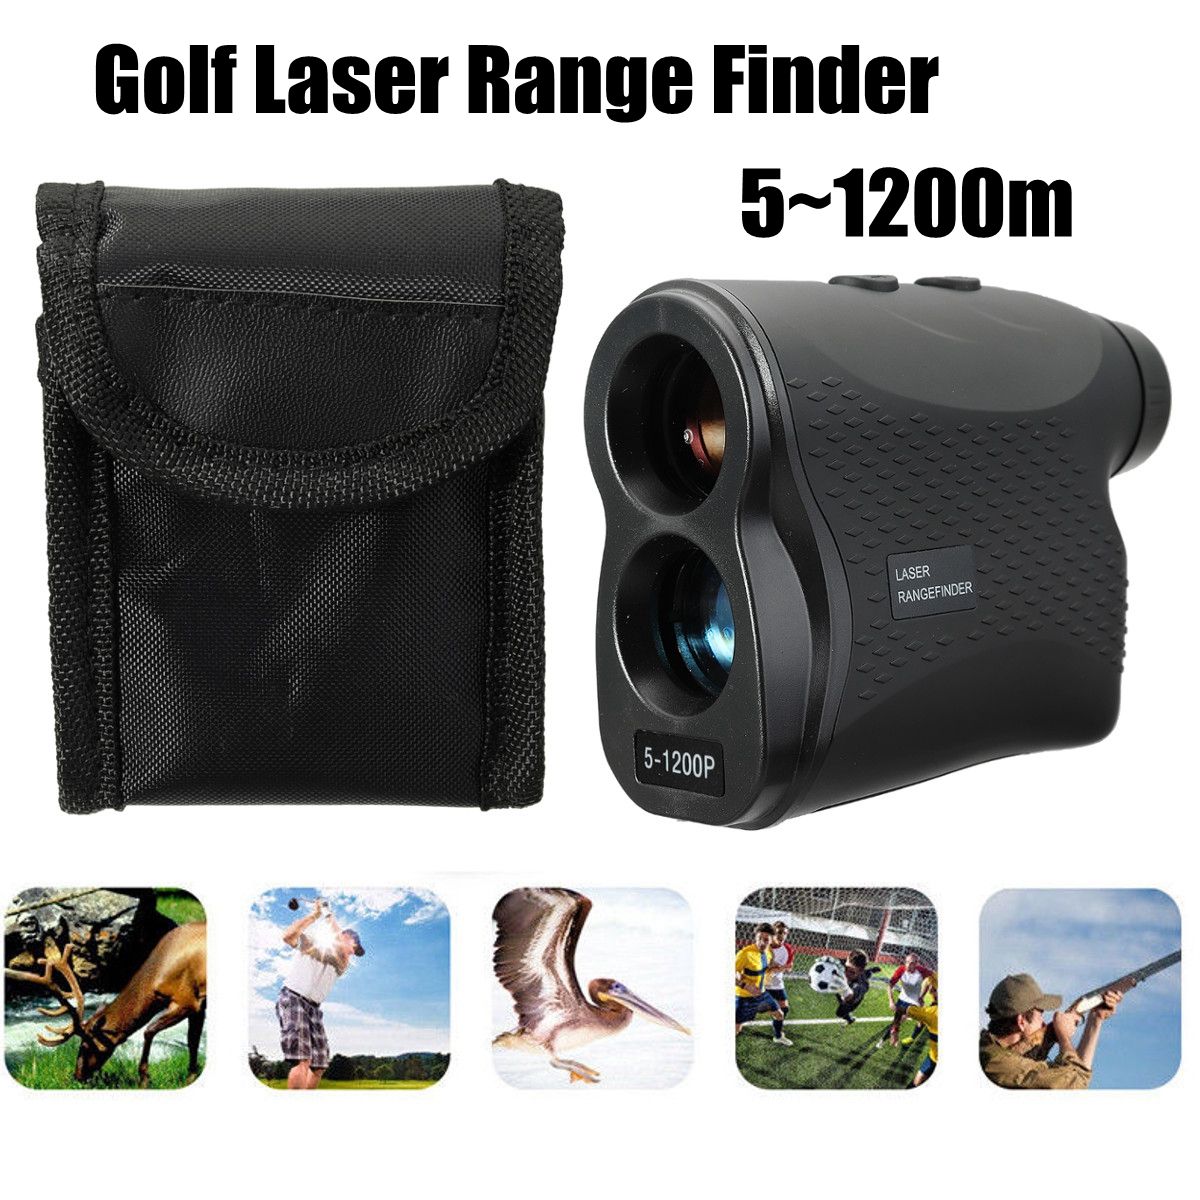 Golf-Laser-Range-Finder-Angle-Scan-wCase-Rangefinder-60090012001500M-1314724